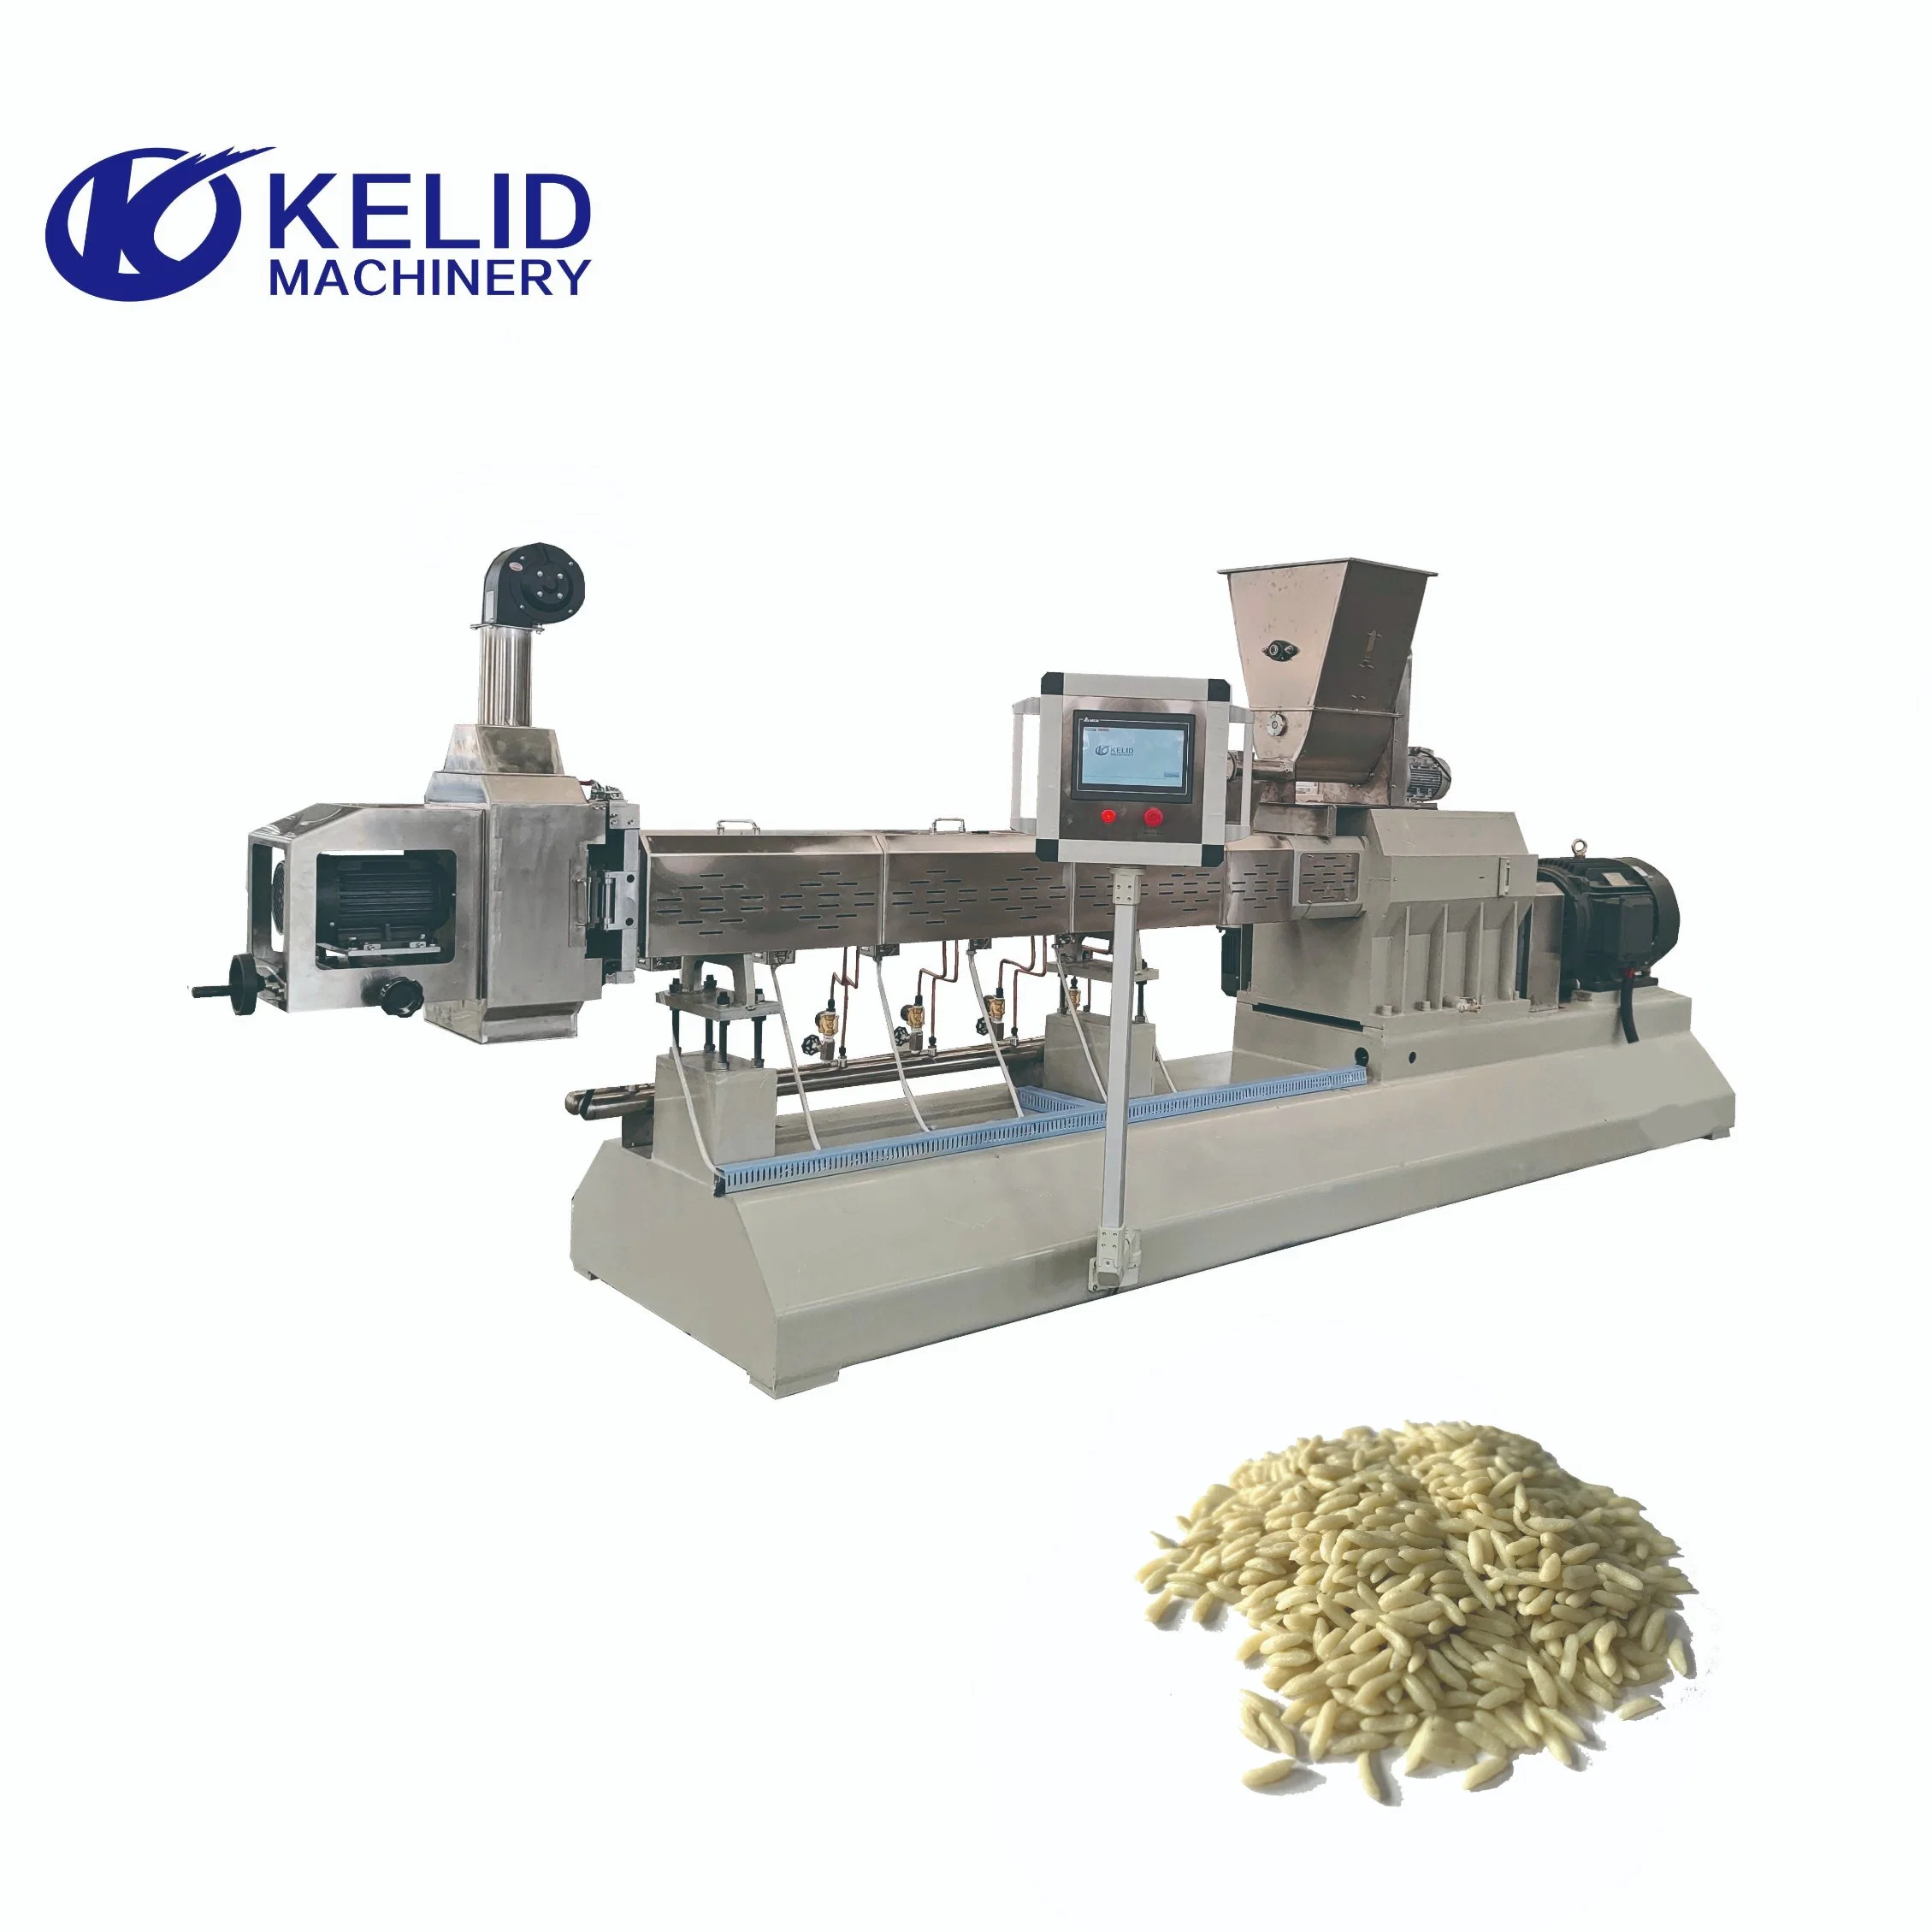 Équipement de processus de riz reconstitué industriel entièrement automatique.